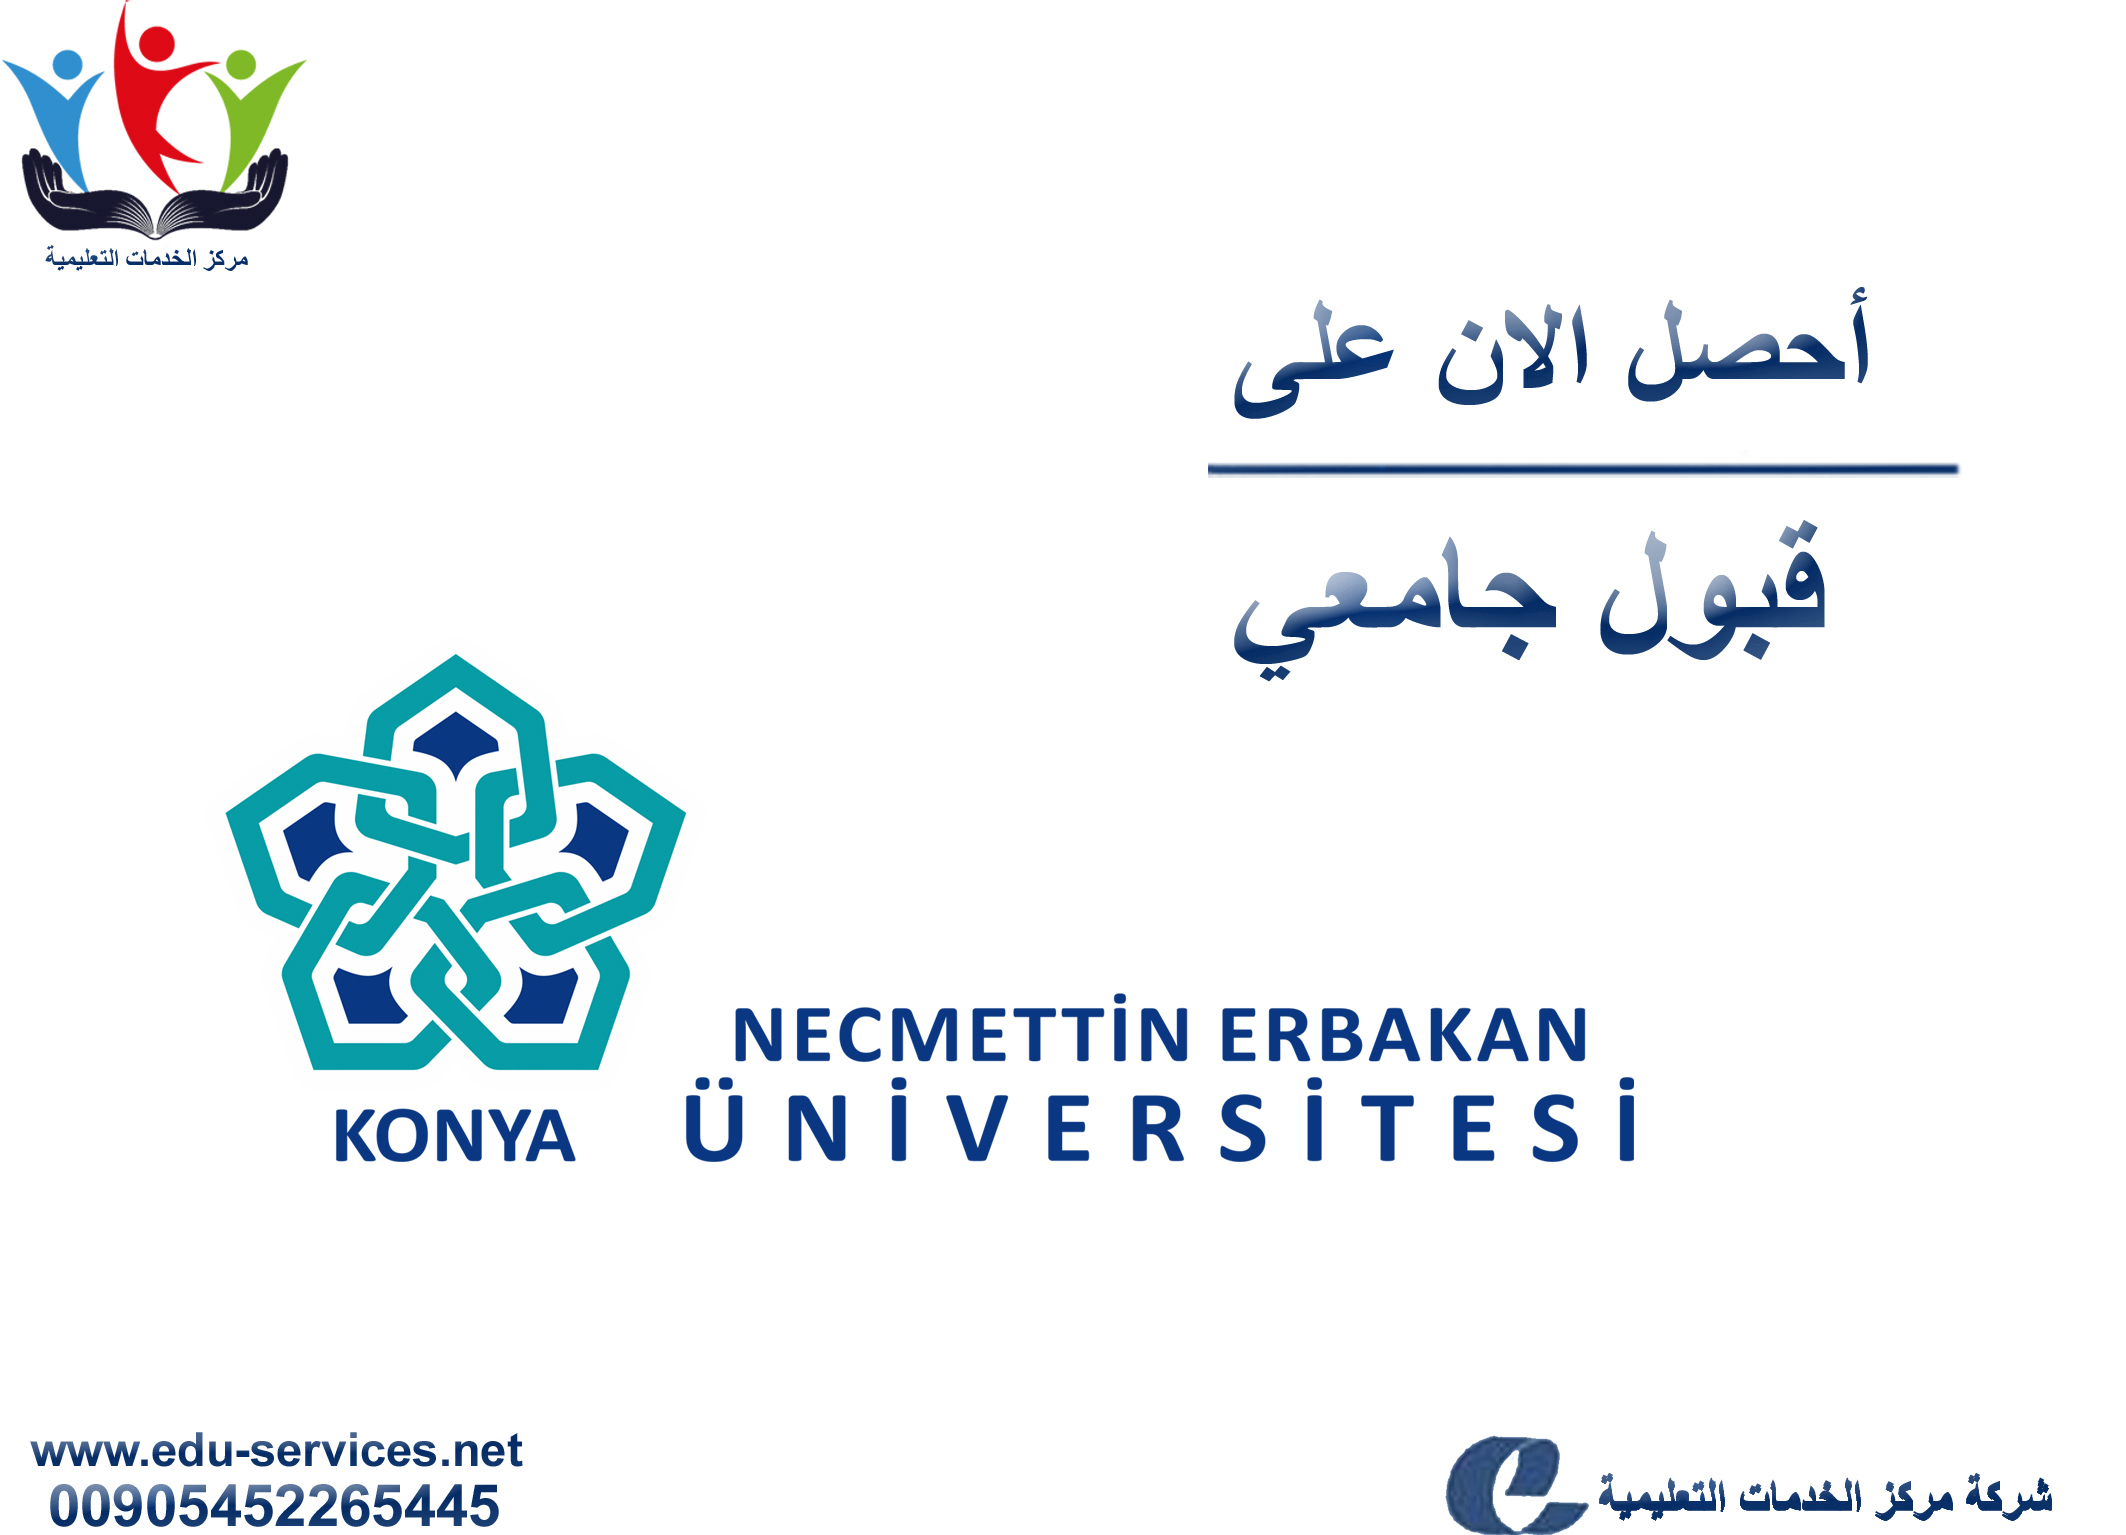 افتتاح التسجيل على جامعة نجم الدين أربكان لبرنامج الدراسات العليا للعام 2019-2020